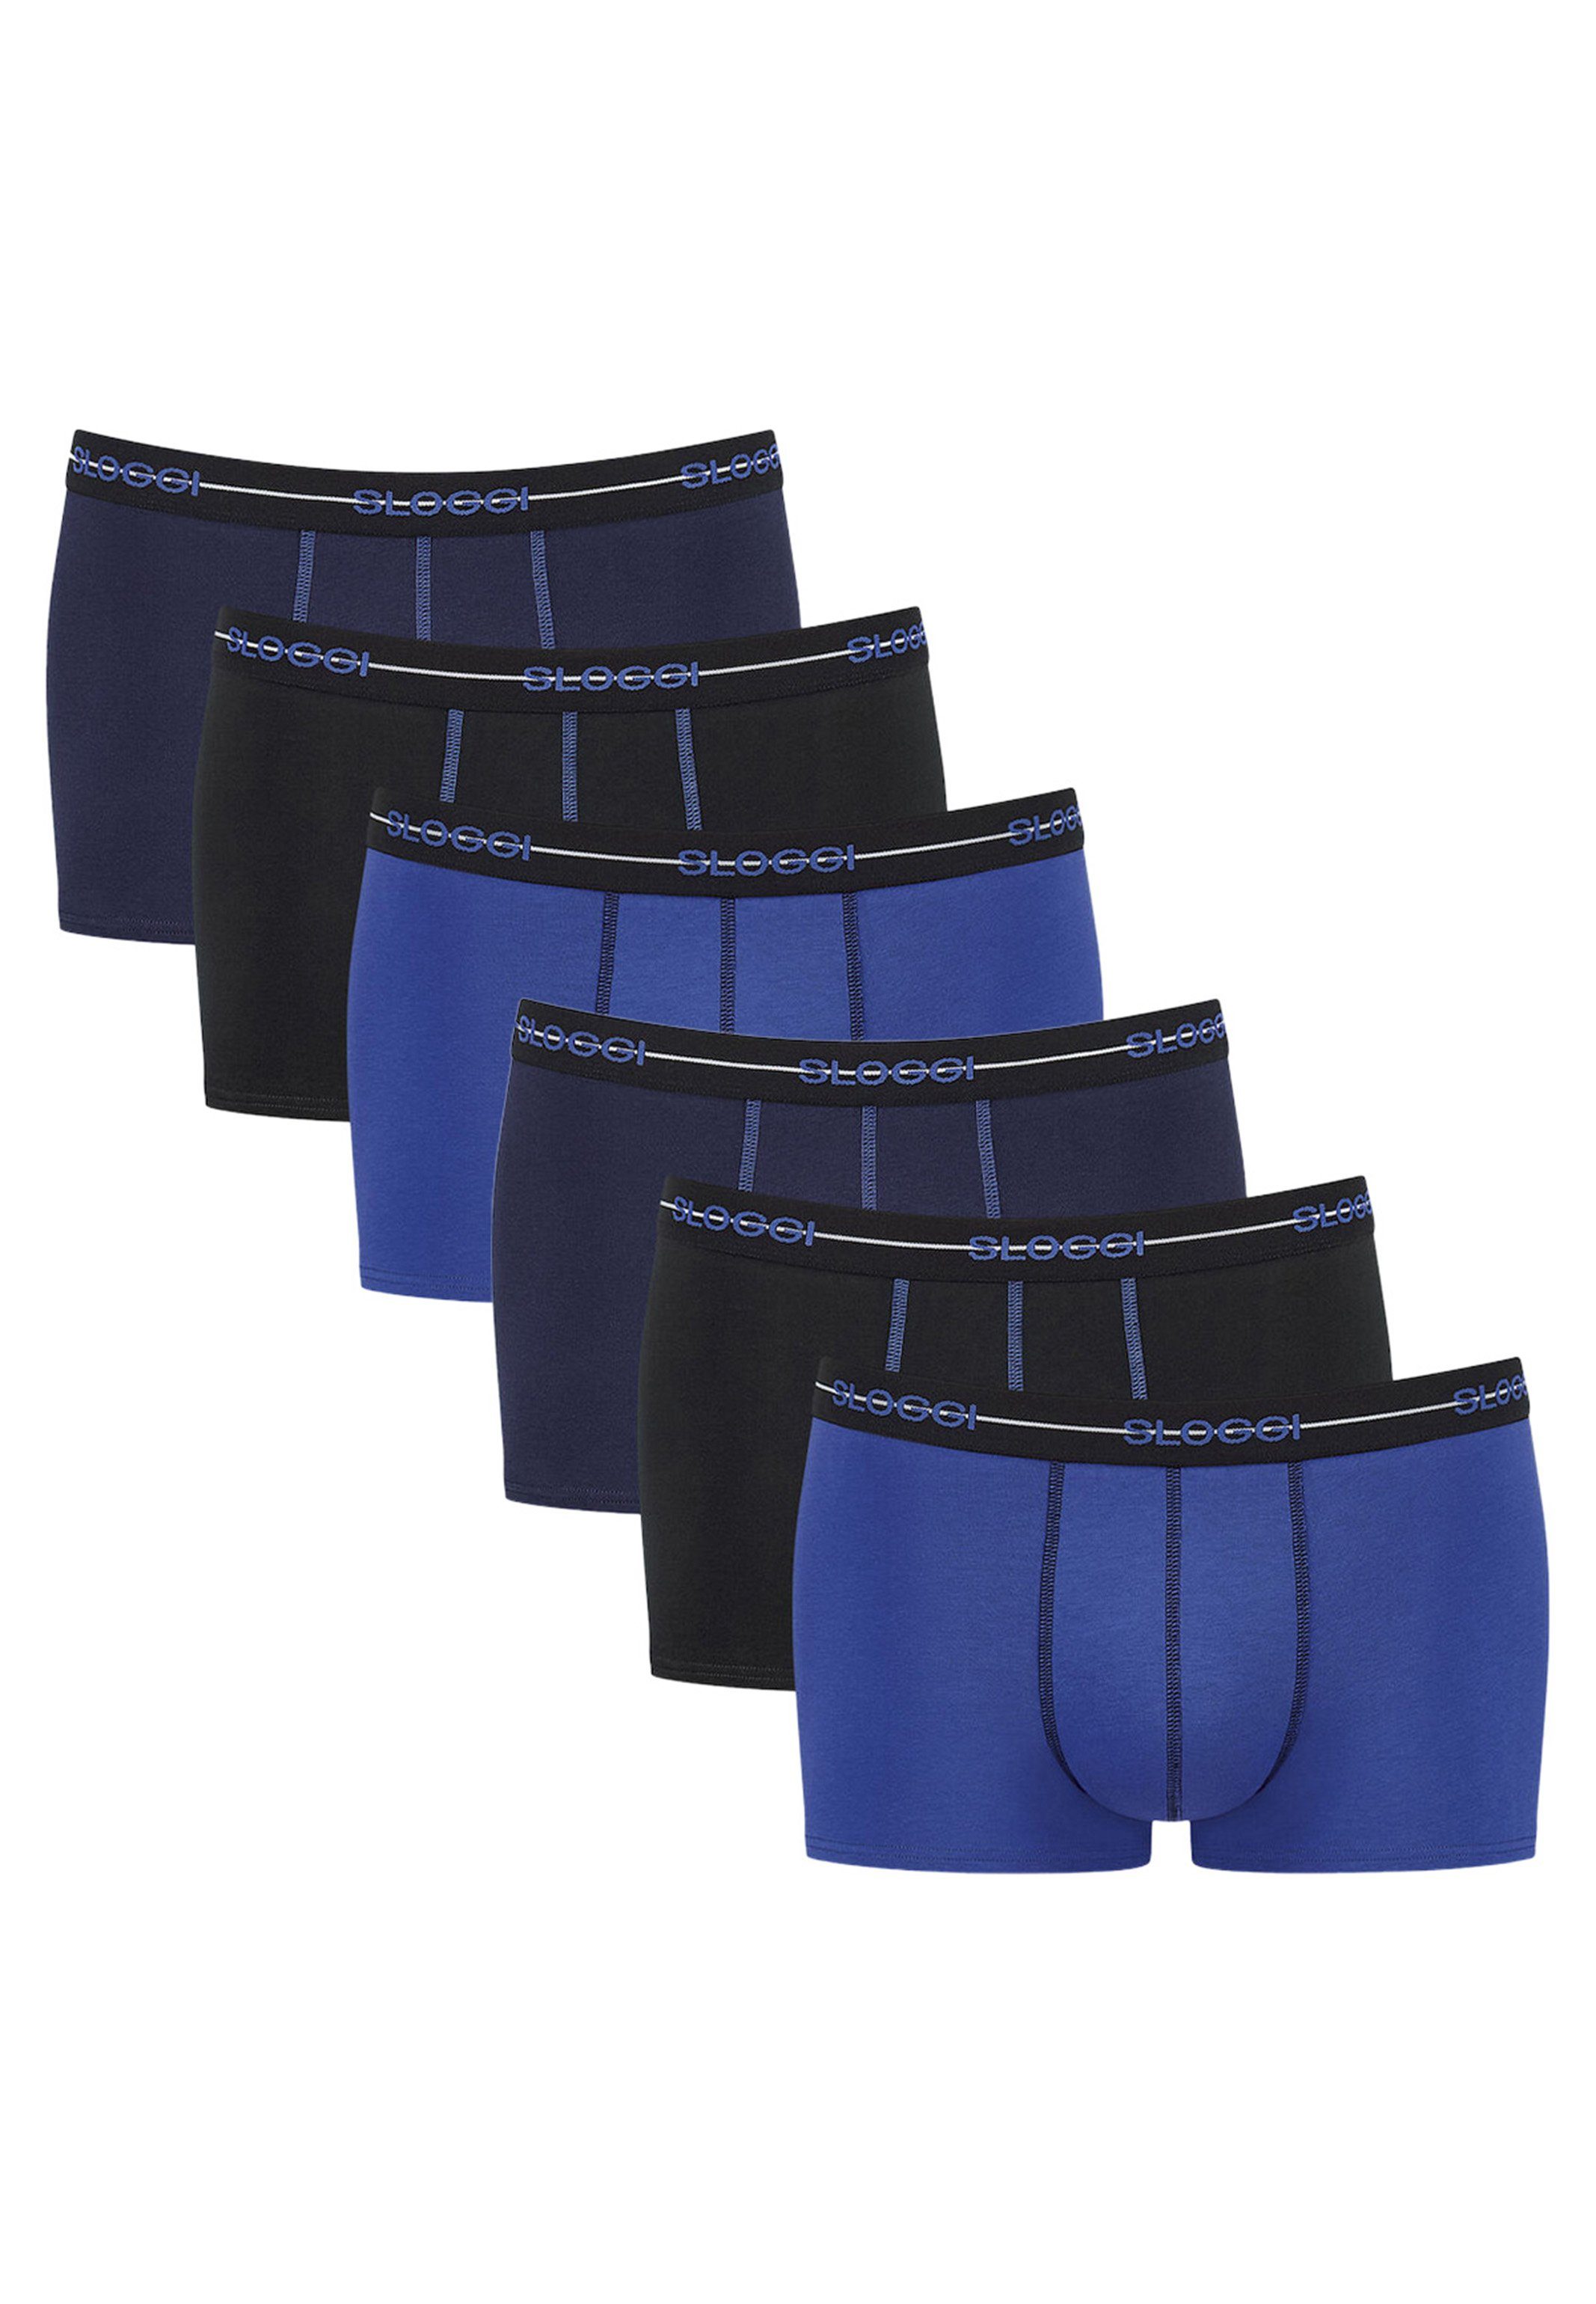 Sloggi Retro Boxer 6er Pack Start (Spar-Set, 6-St) Hipster / Pant - Baumwolle - Ohne Eingriff - Extra weiches Taillenband Blau / Schwarz / Dunkelblau